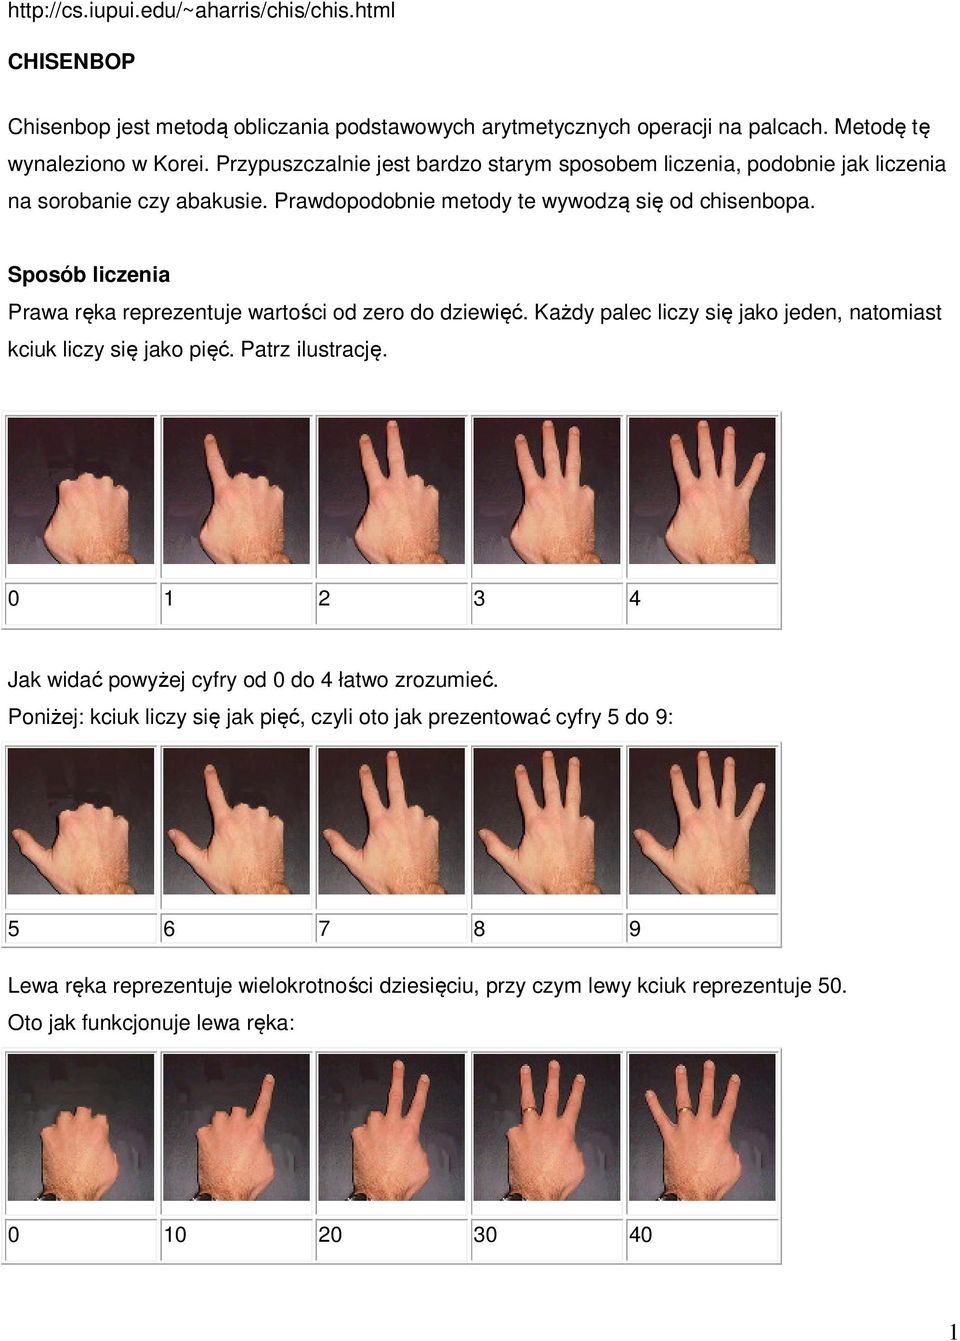 Sposób liczenia Prawa ręka reprezentuje wartości od zero do dziewięć. Każdy palec liczy się jako jeden, natomiast kciuk liczy się jako pięć. Patrz ilustrację.